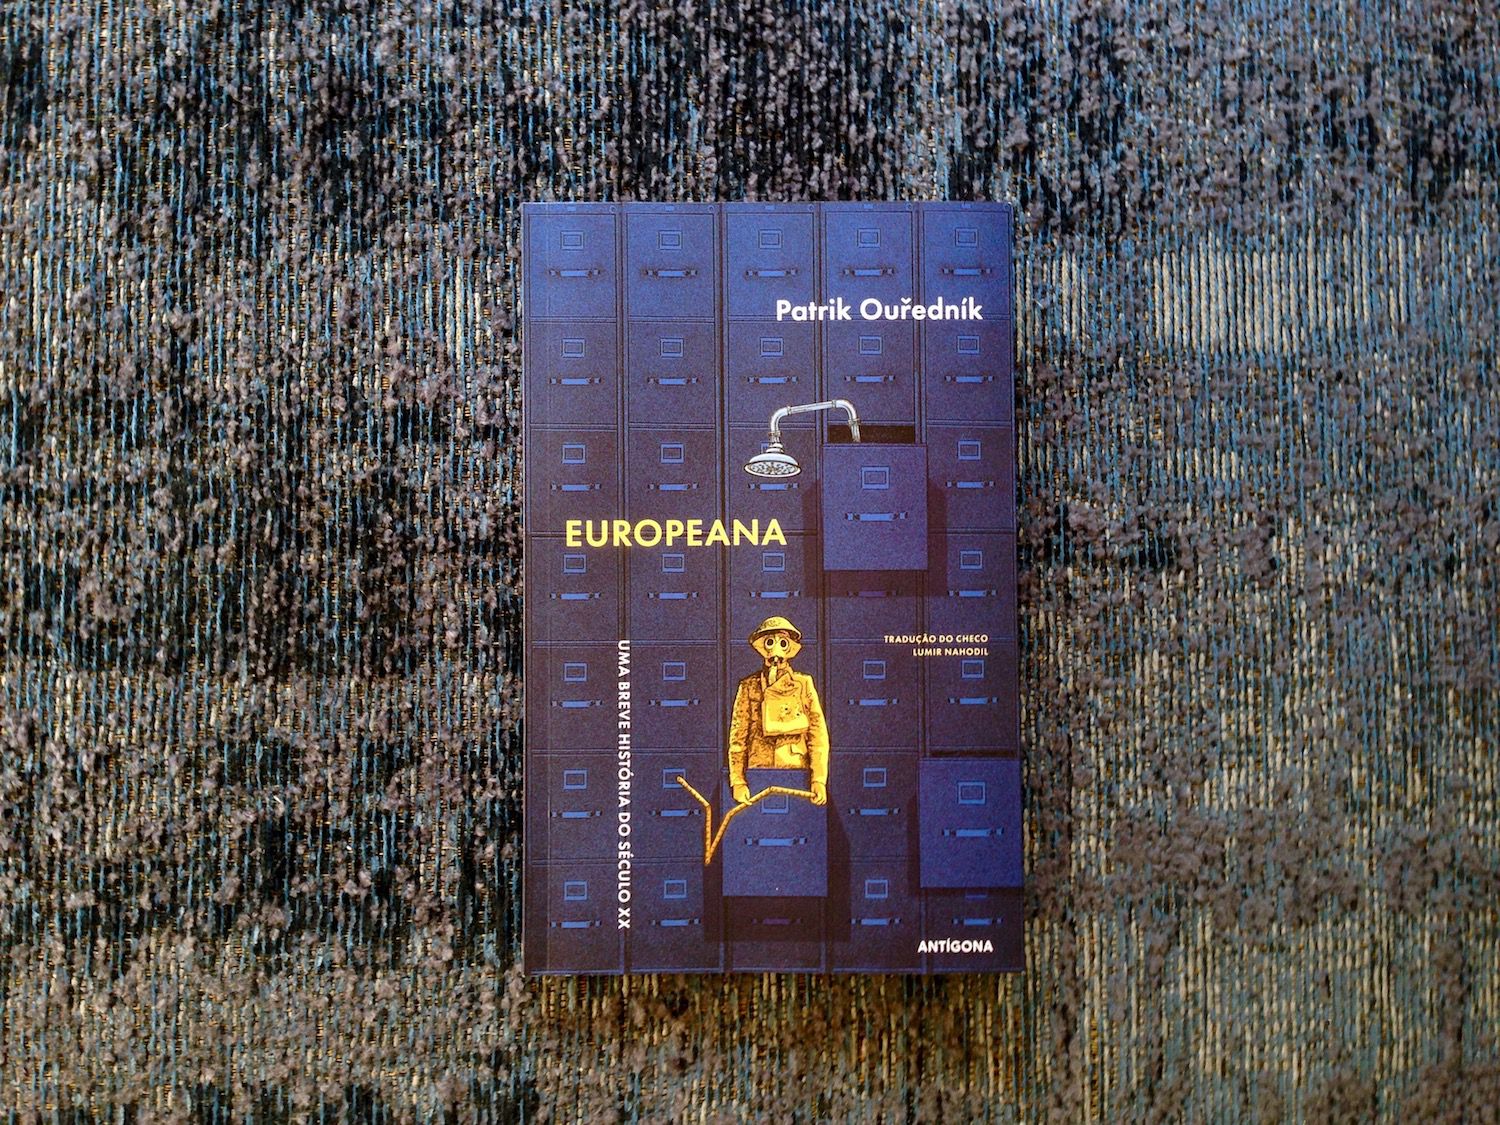 Ouředník e a crueza sádica da humanidade, em “Europeana: Uma Breve História do Século XX”